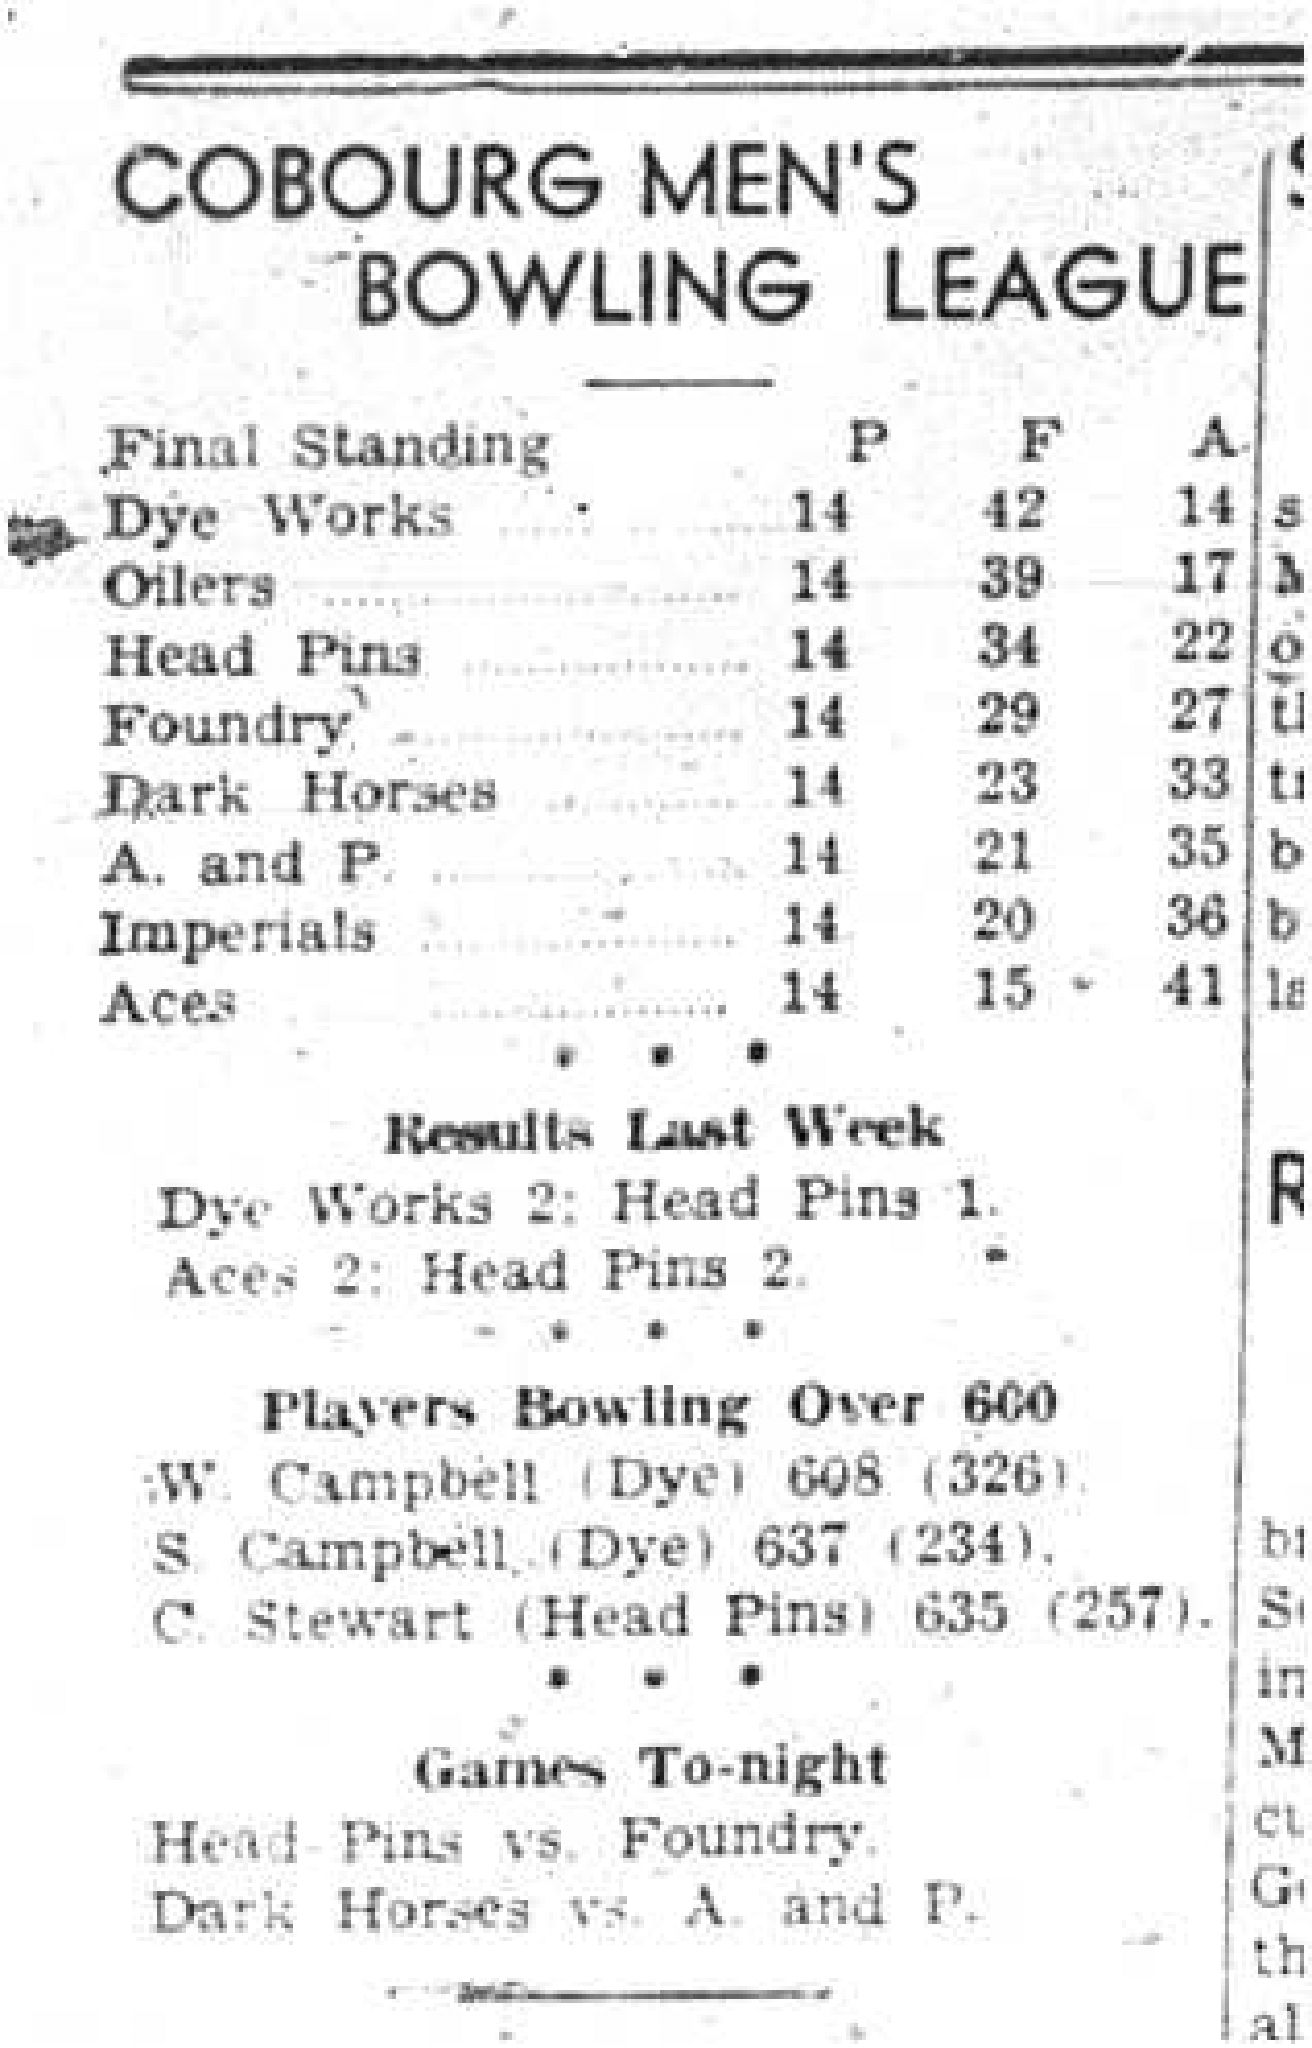 1943-02-25 Bowling - Men